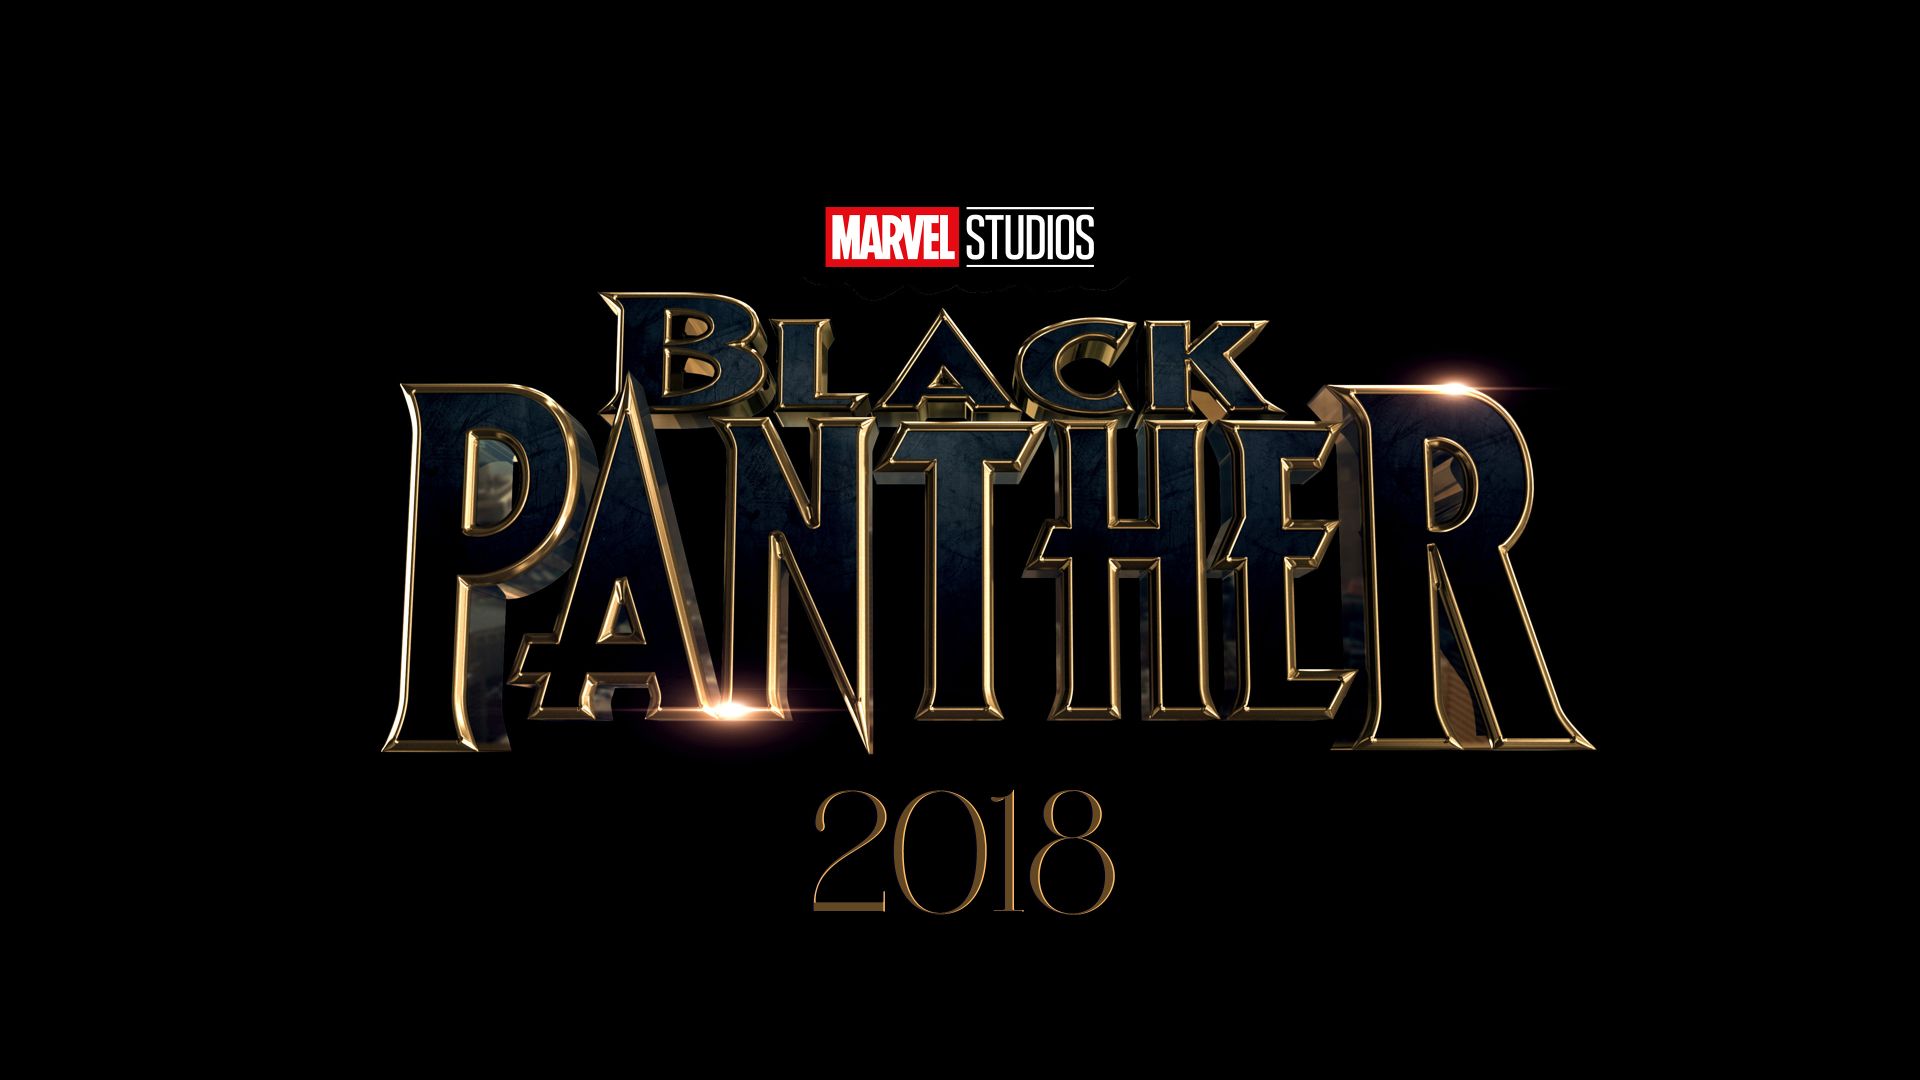 Black Panther, 4k, 2018, poster (horizontal)